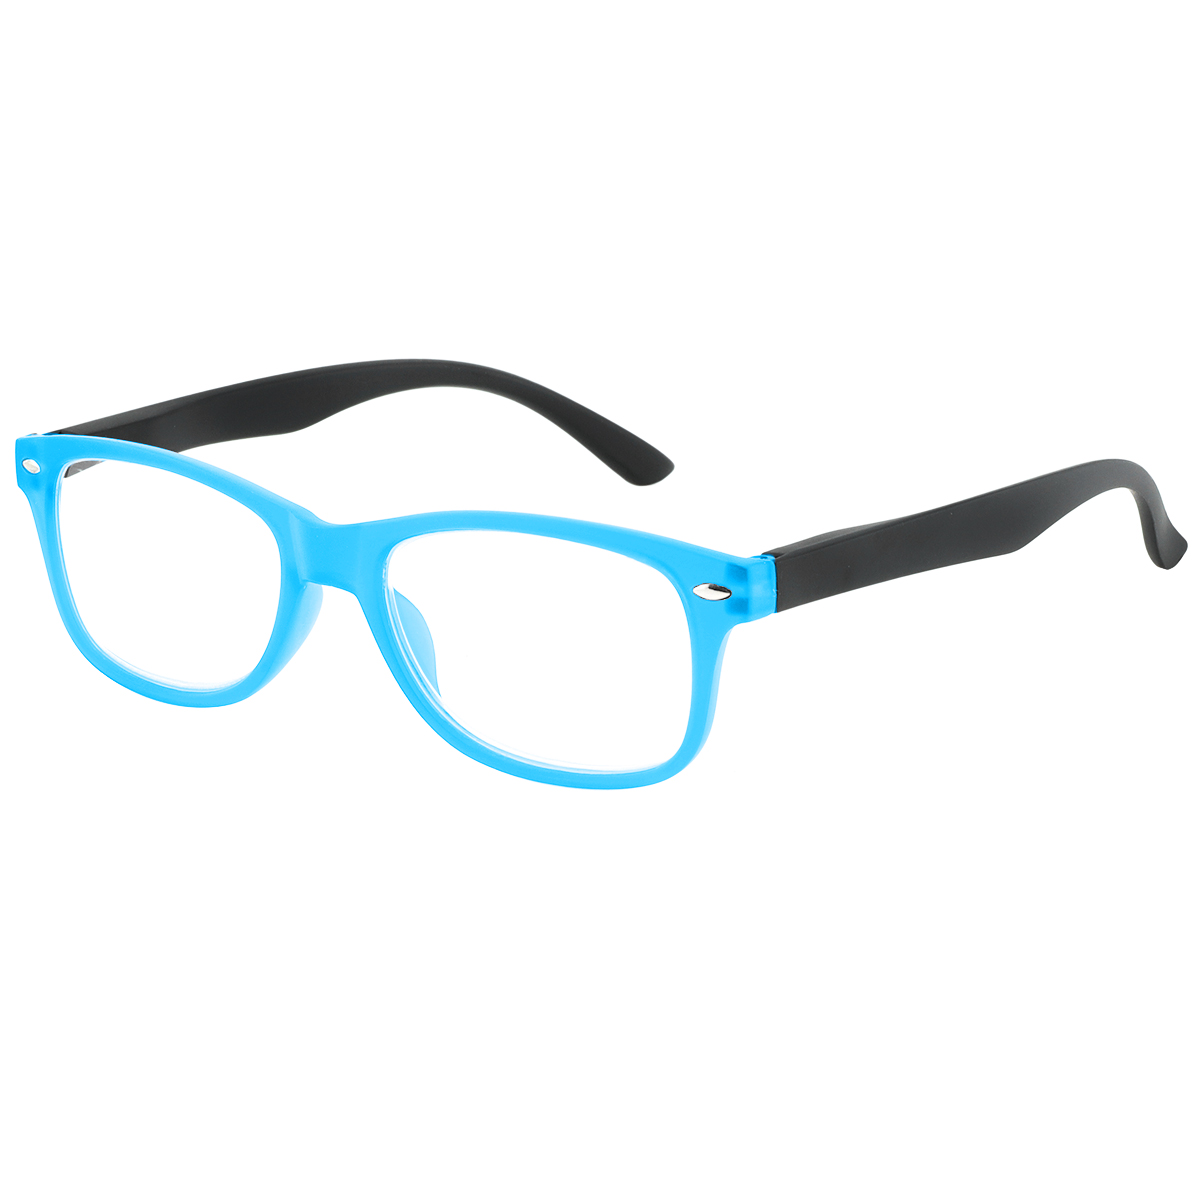 Lege - Rectangle Blue Reading Glasses for Men & Women